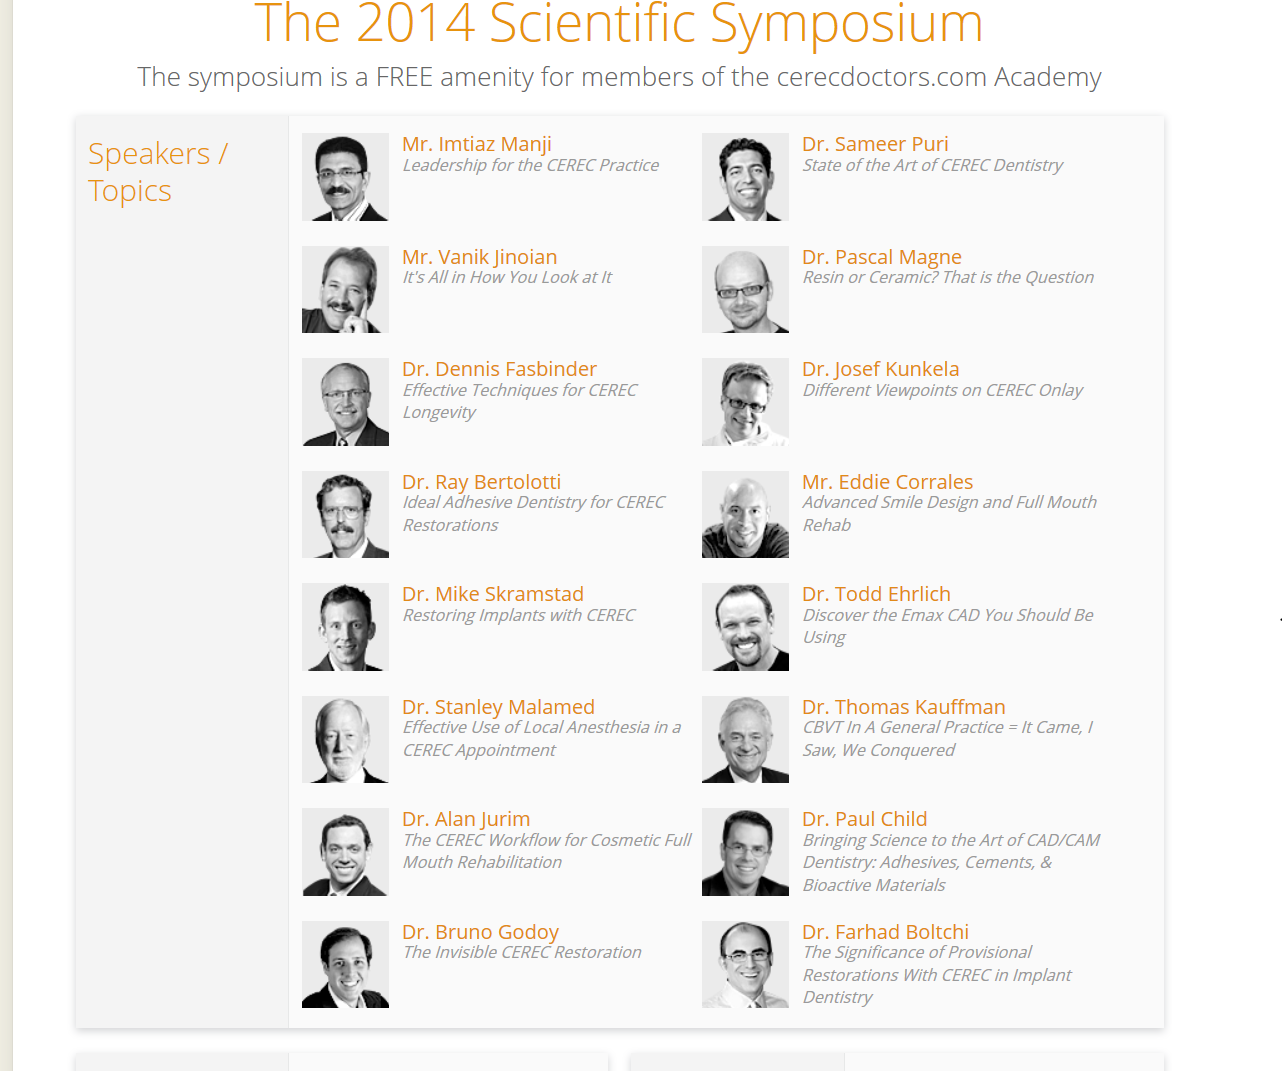 The Scientific Symposium Speakers and Topics